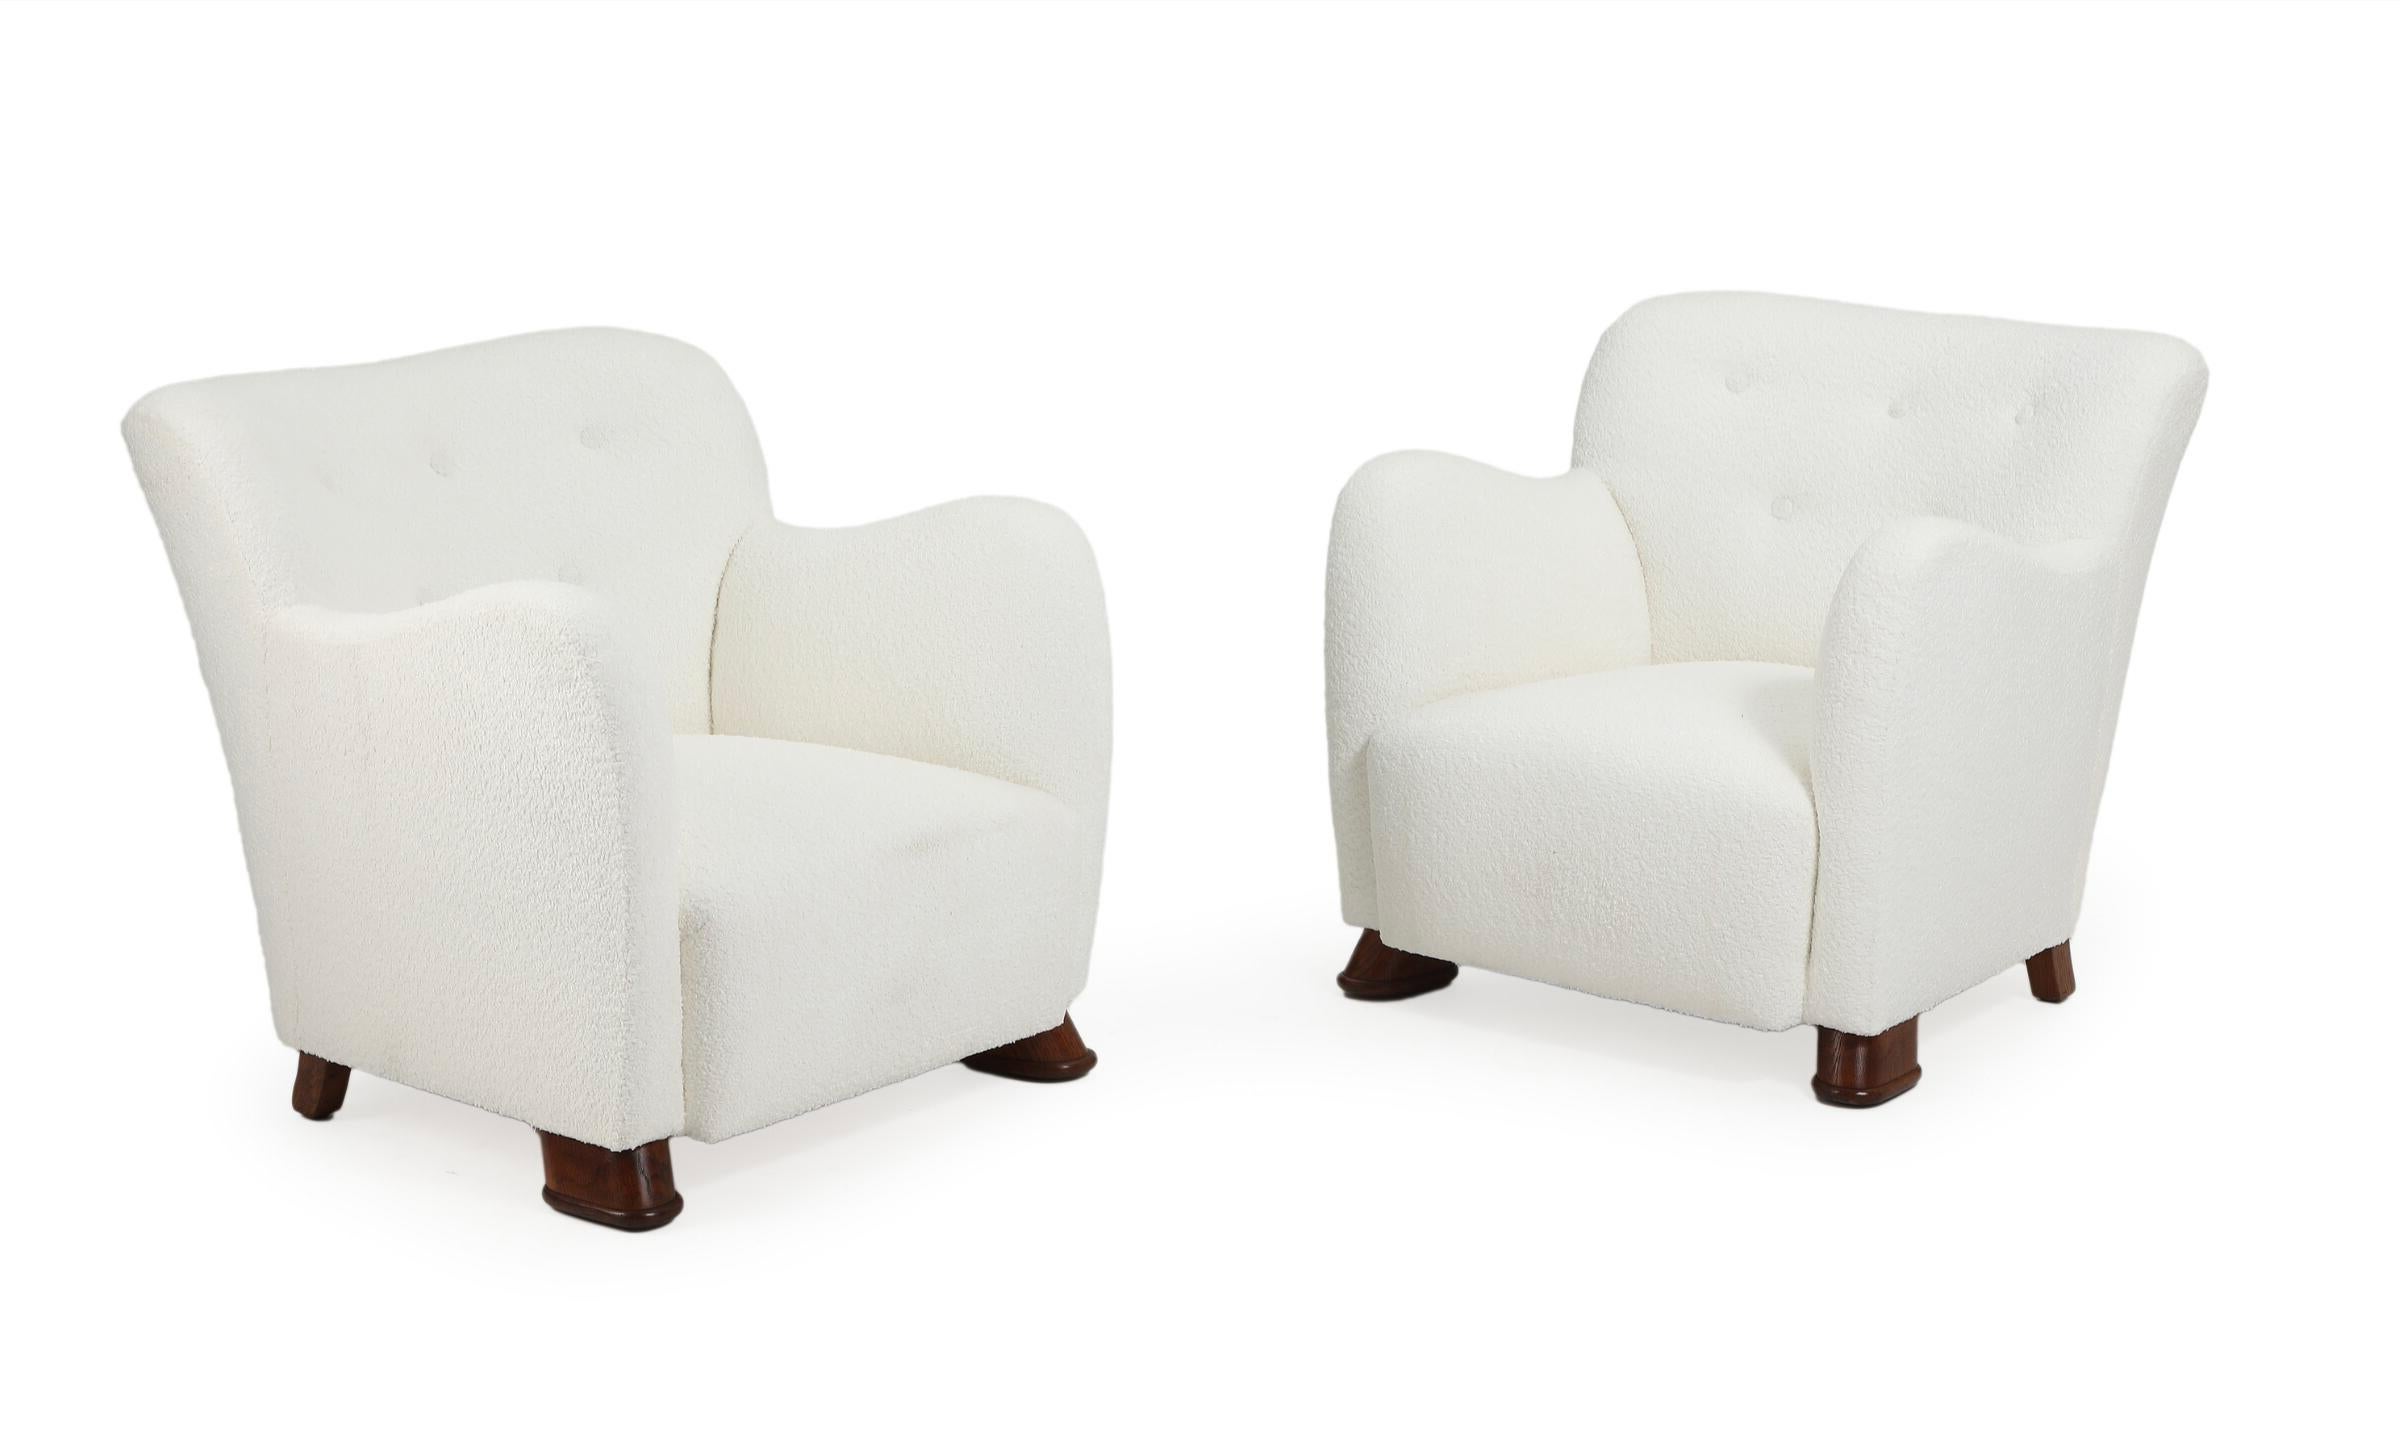 Ein dänisches Möbeldesign-Paar aus bequemen Sesseln, die mit hellem Bouclé gepolstert sind. Original aus Schweden aus den 1940er Jahren. Die Stühle sind in tadellosem Zustand und wurden nach einer kürzlichen Neupolsterung nicht mehr benutzt.

Fragen